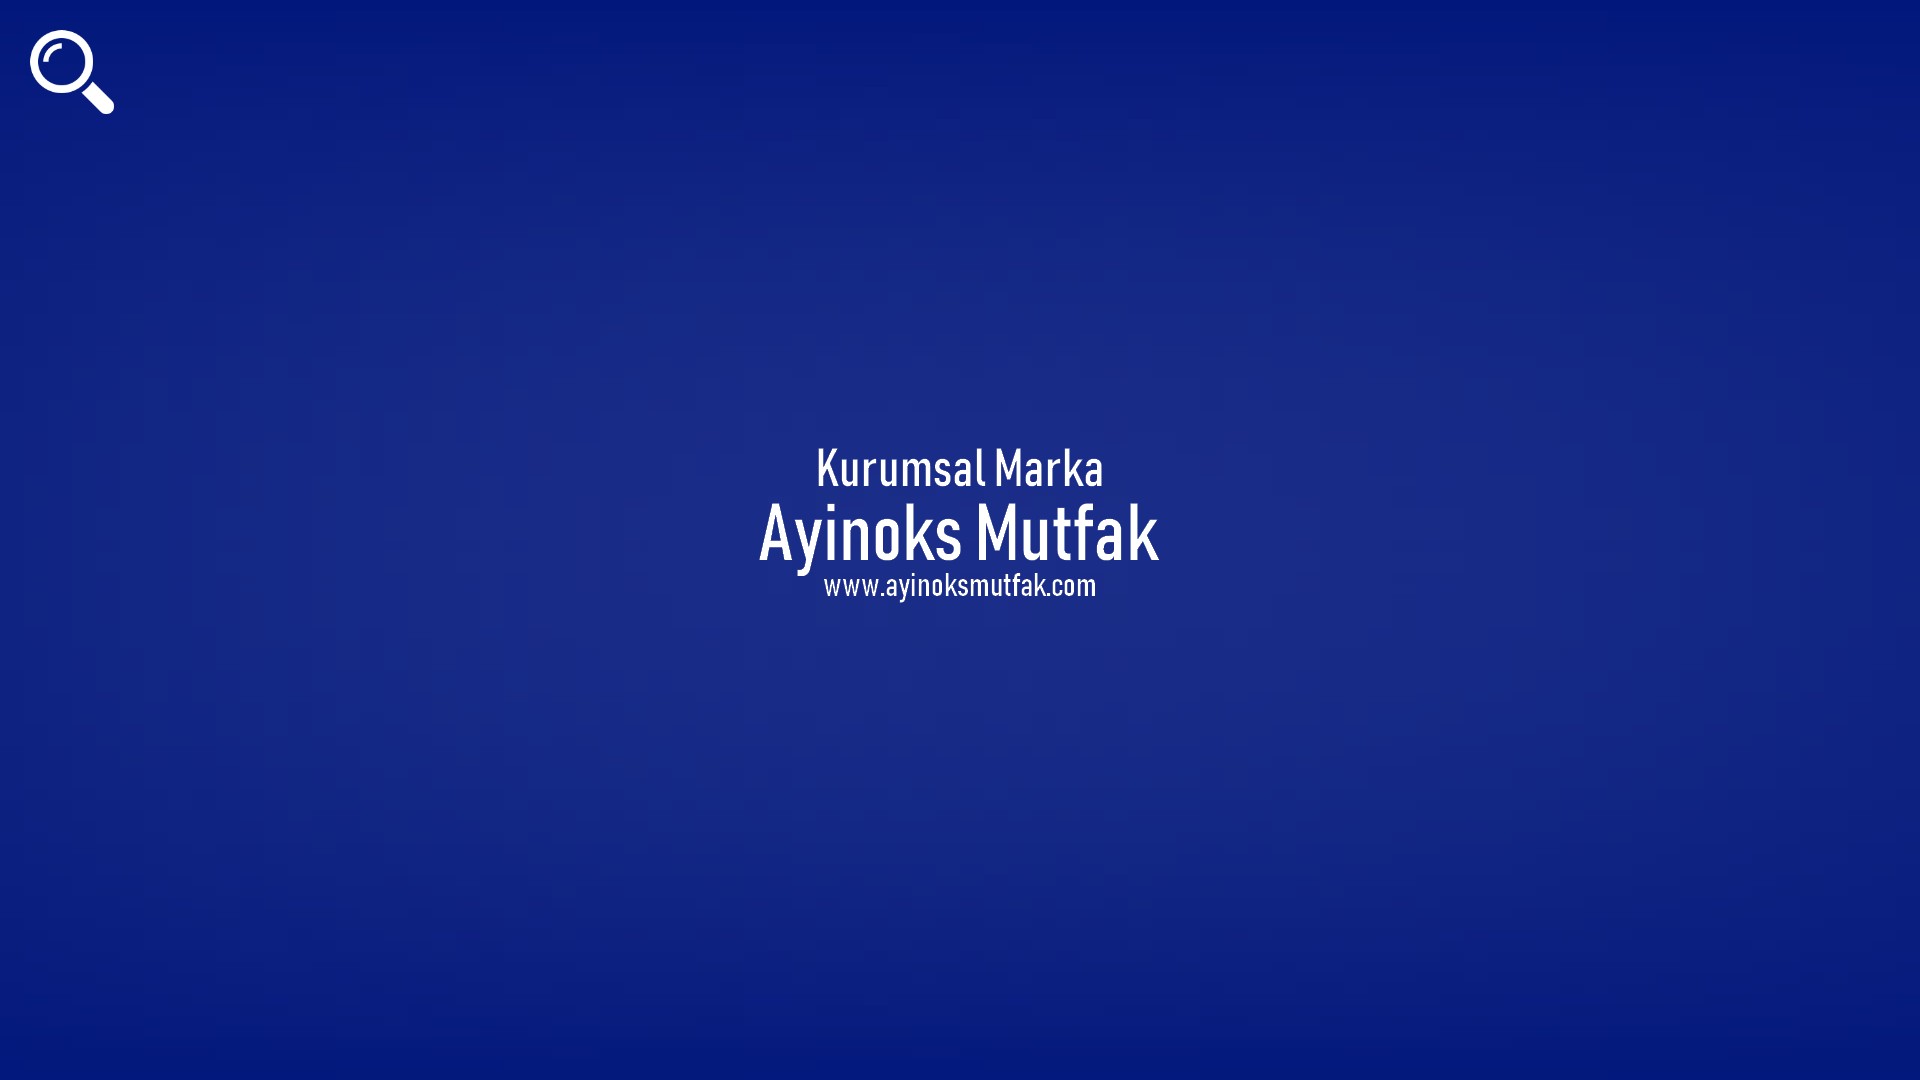 Ayinoks Mutfak başlıklı içeriğin kapak resmi.